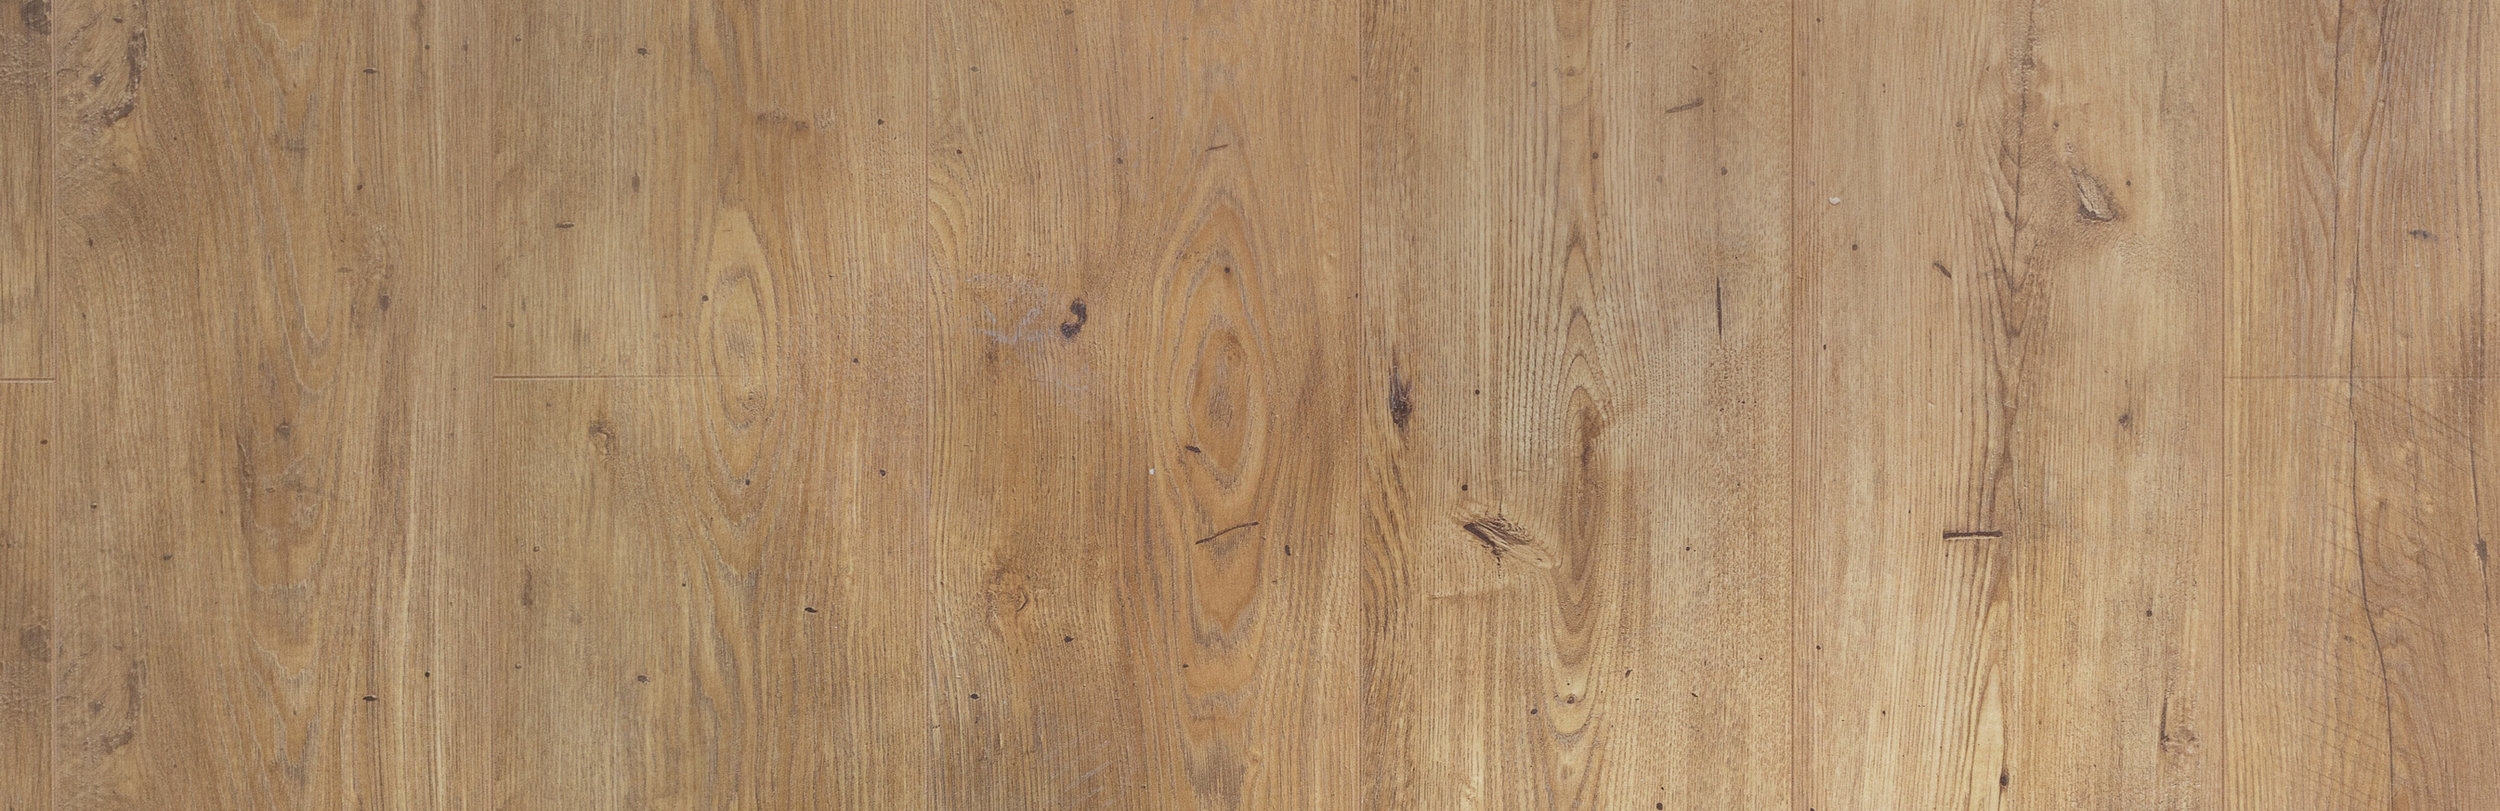 Hardwood Floor Repairs Resurfacing, Hardwood Floor Repair St Louis